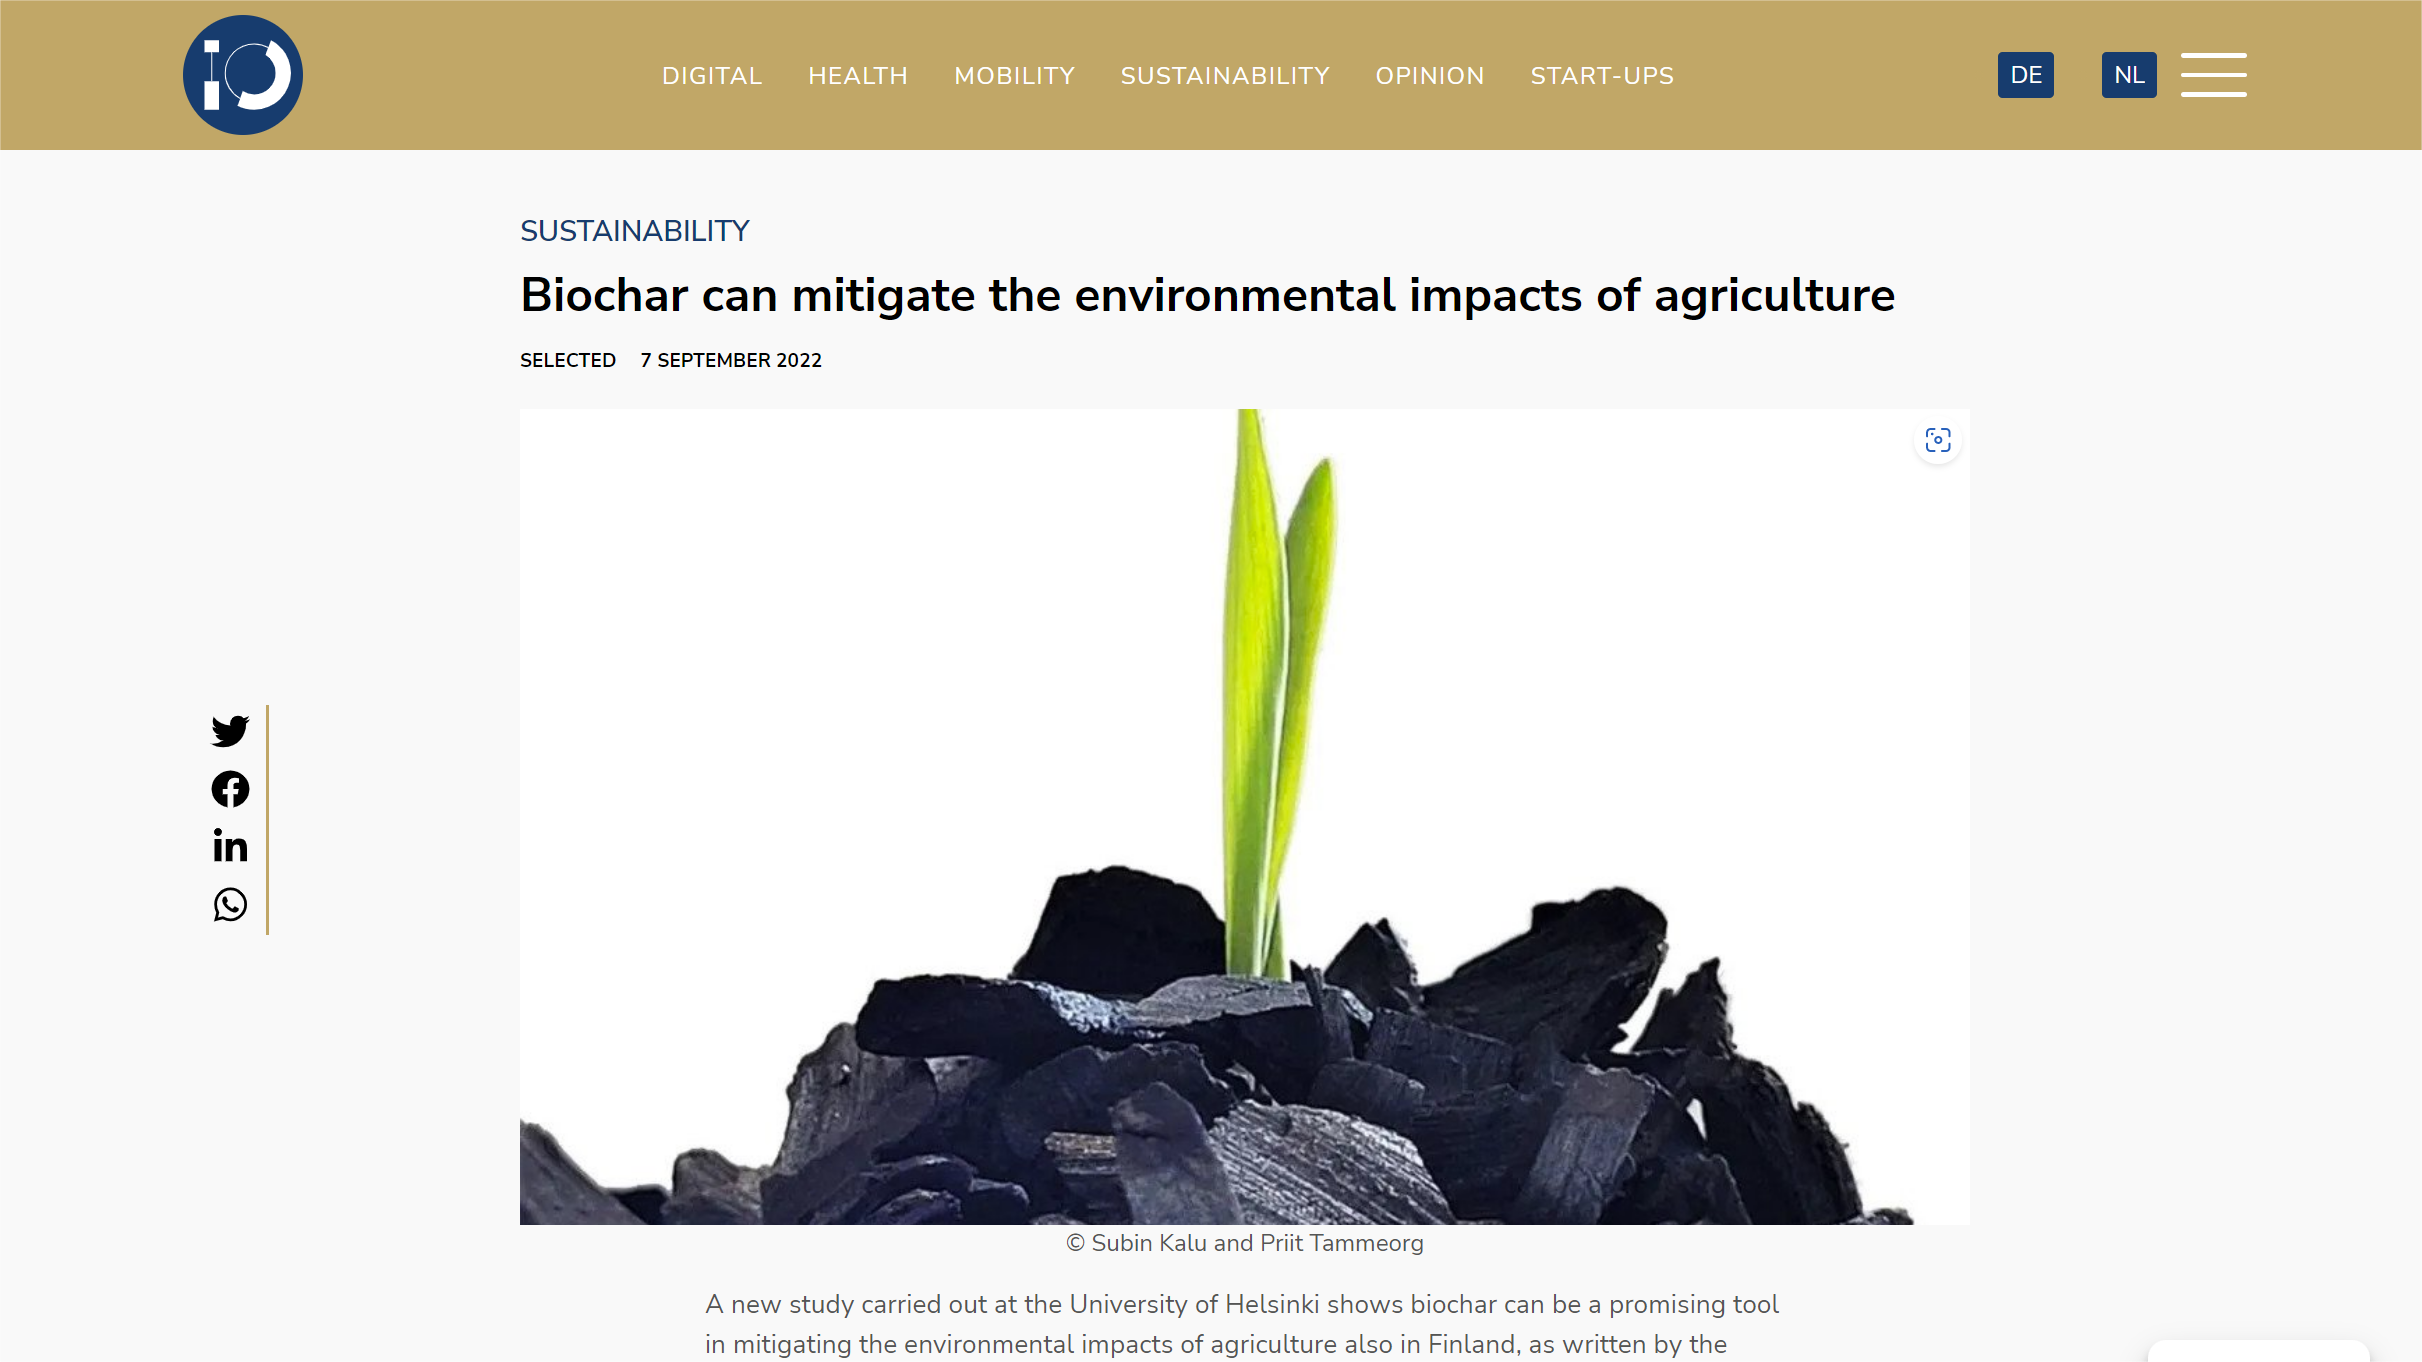 赫尔辛基大学研究表明生物炭可以减轻农业对环境的影响